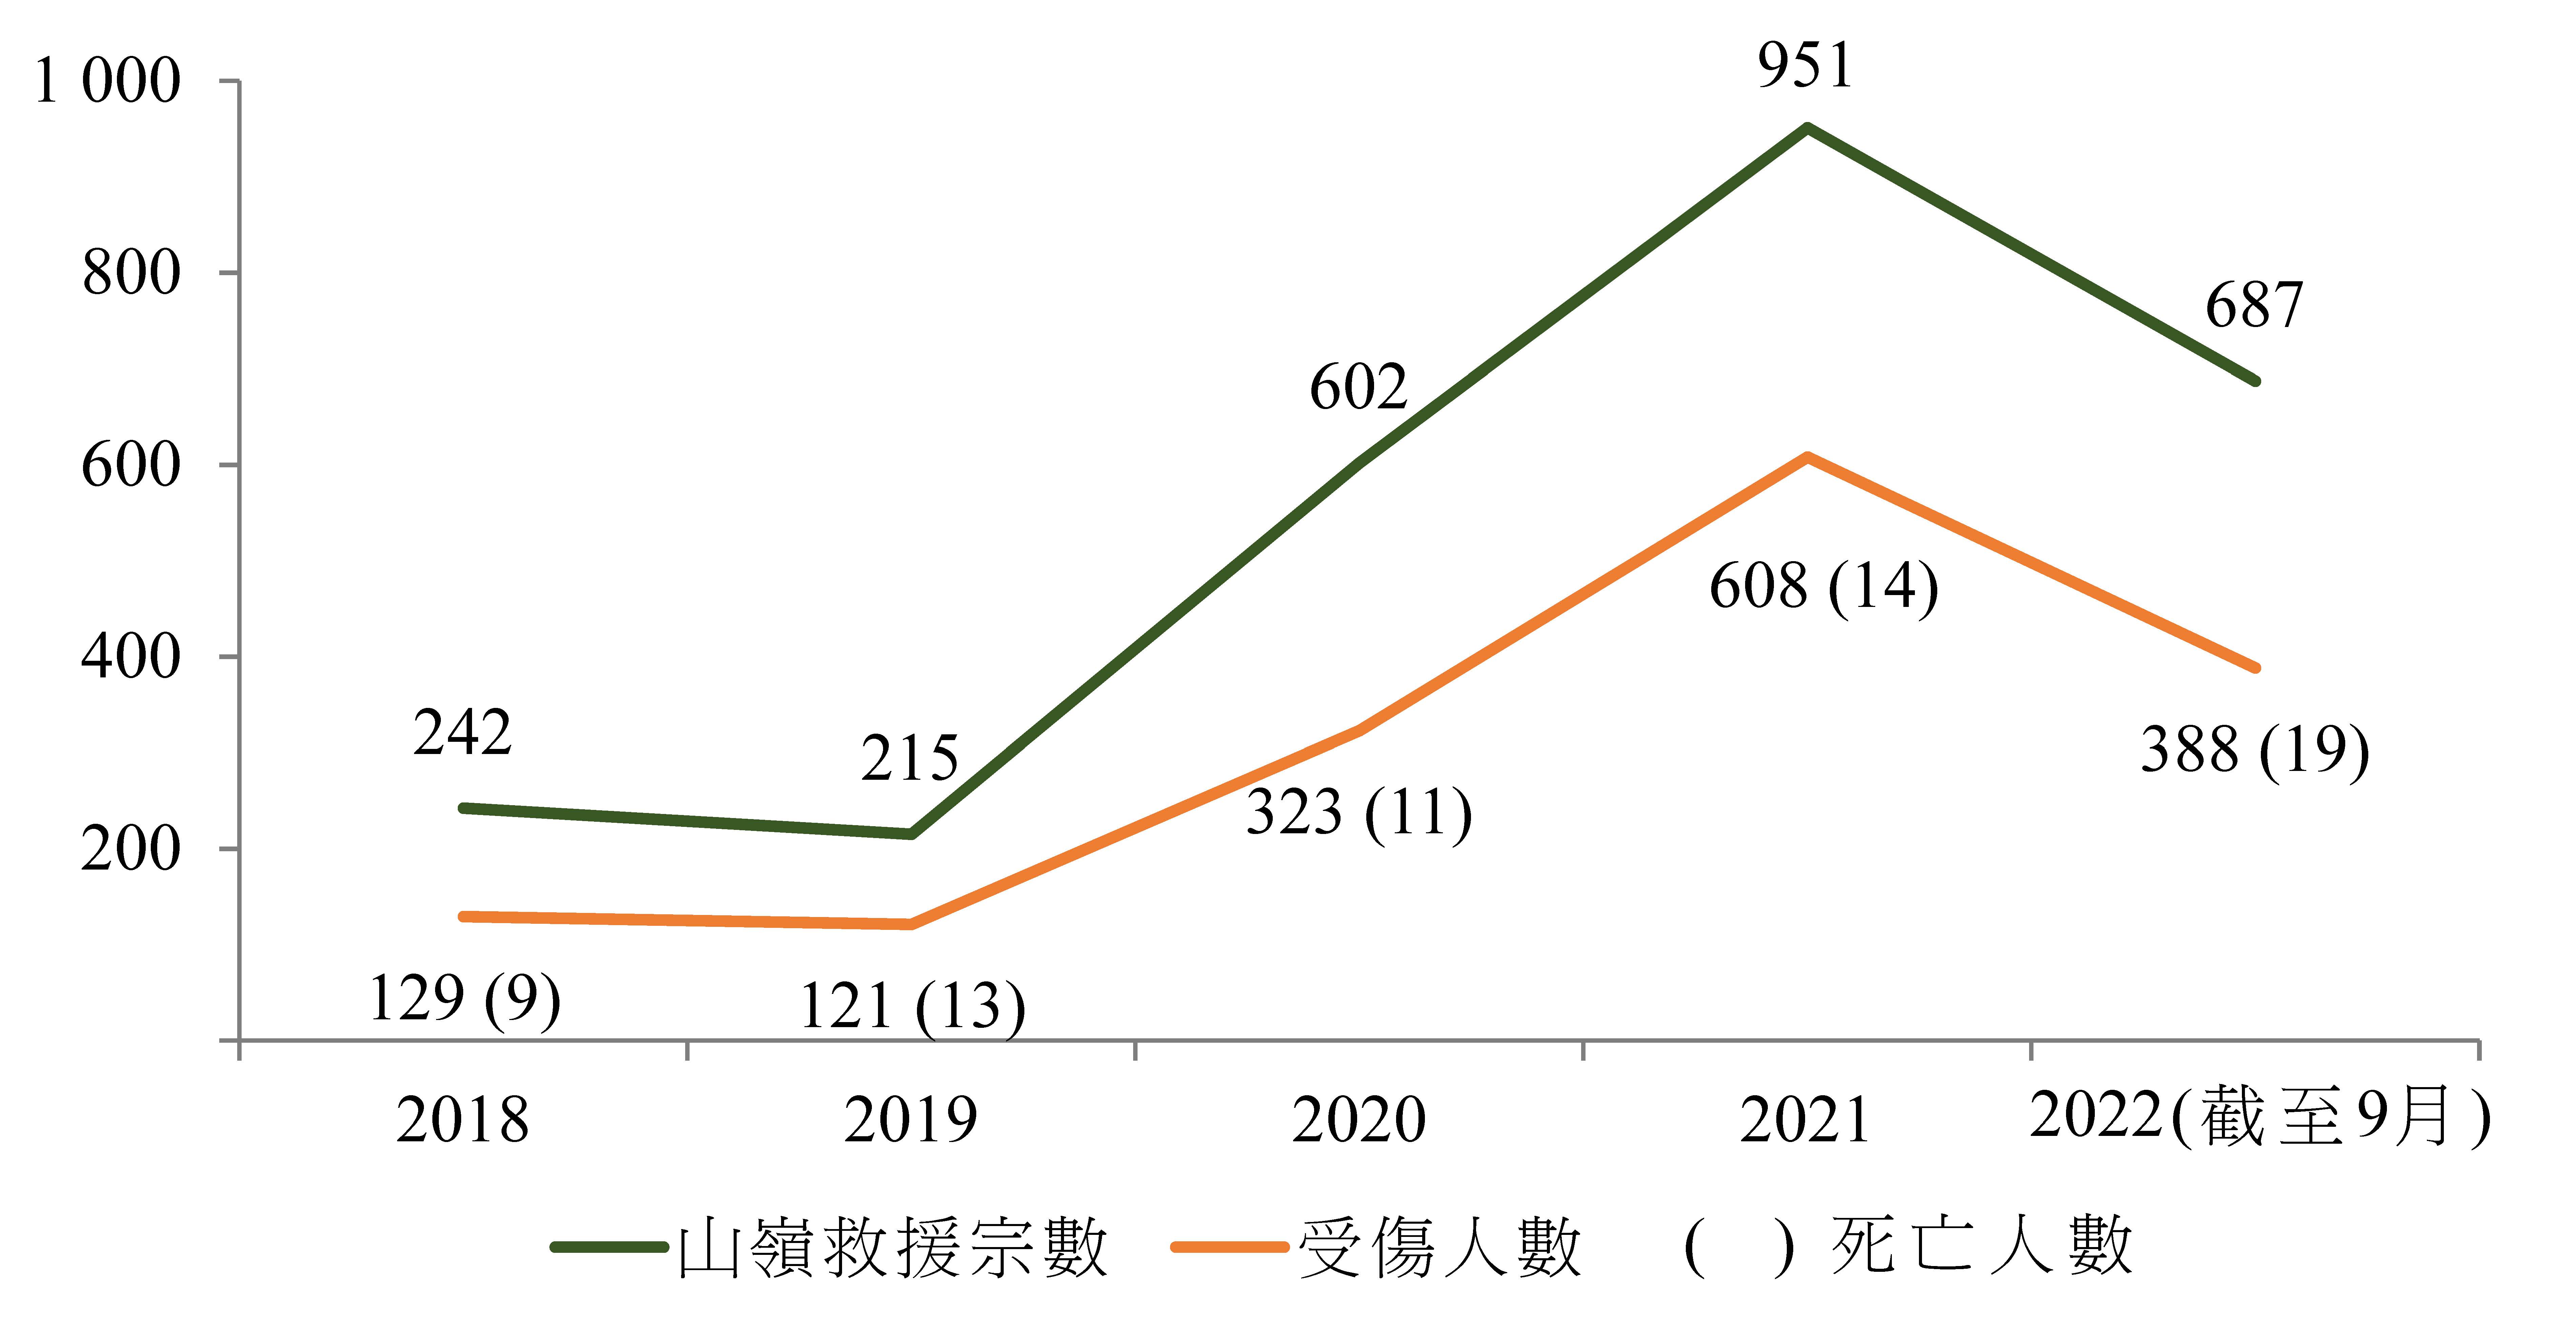 图1 ── 2018年至2022年间香港的山岭救援宗数与伤亡人数